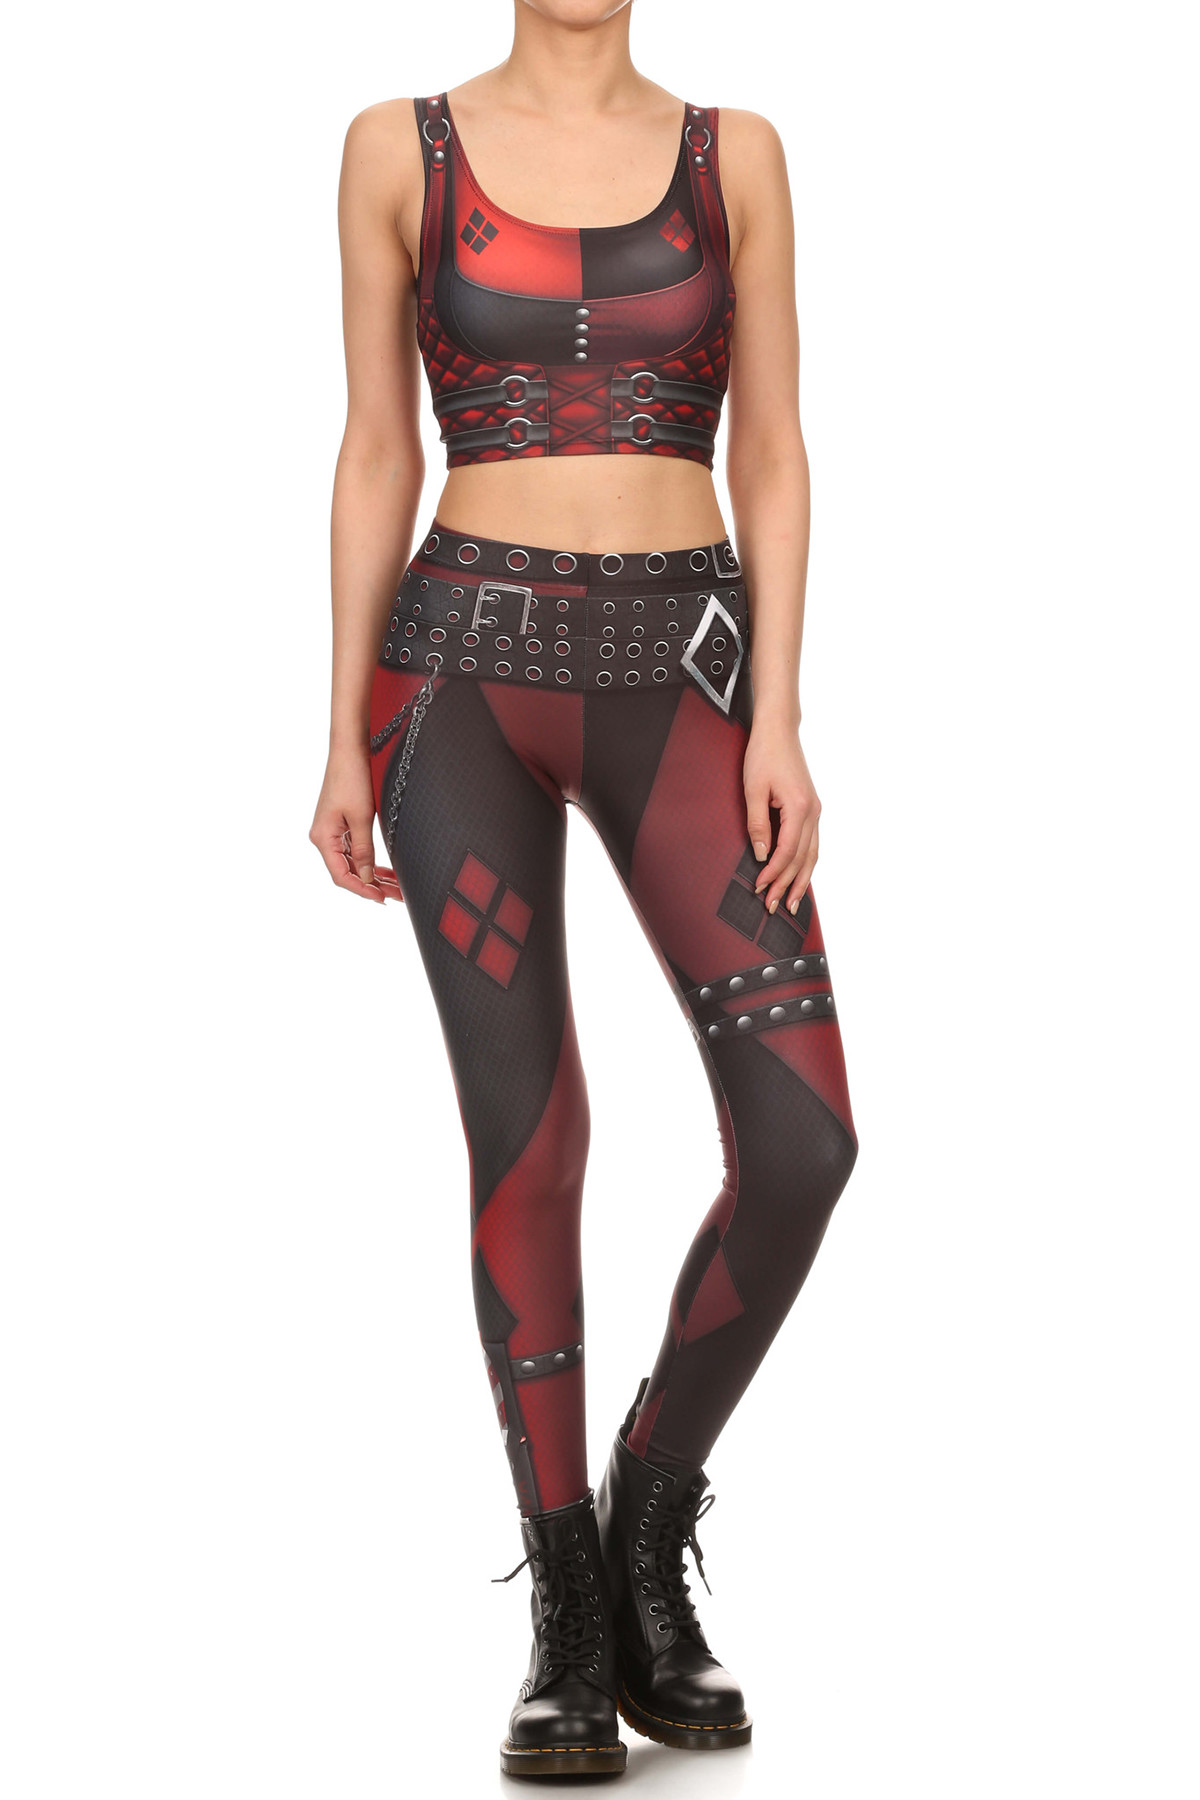 Harley Quinn Inspired Leggings and Croptop :: Behance